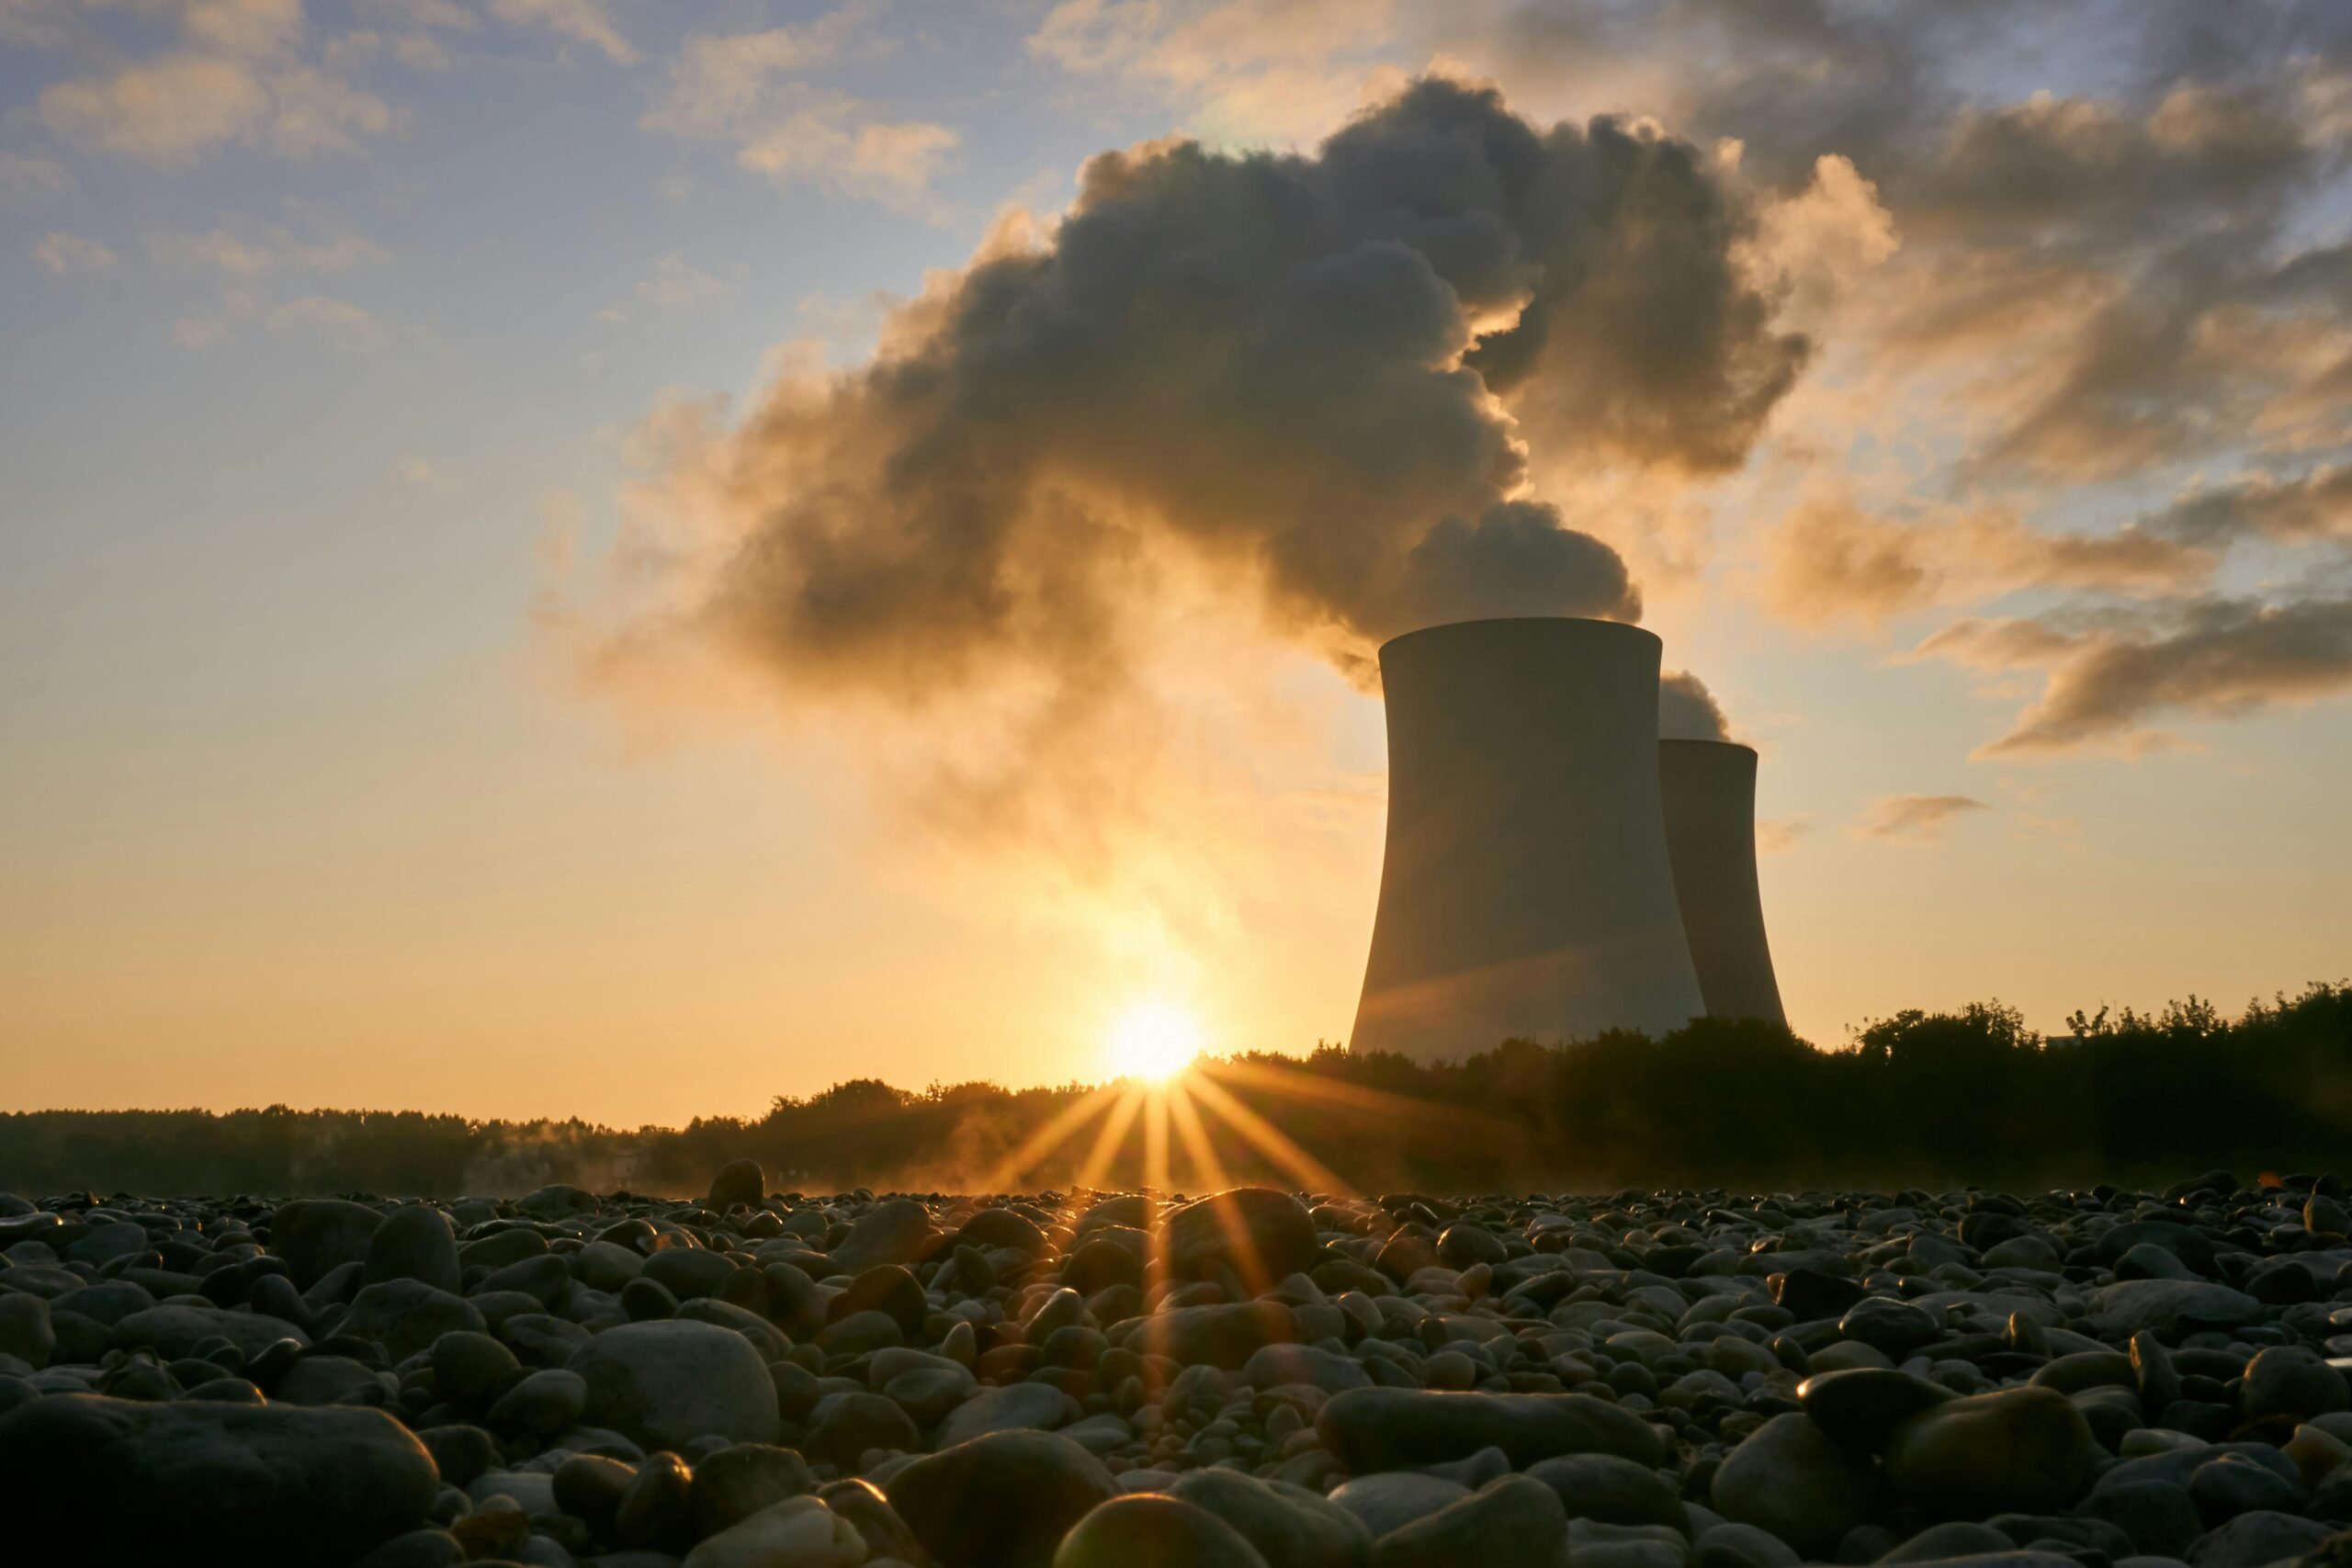 HANetfs analysschef Tom Bailey diskuterar lanseringen av Sprott Junior Uranium Miners UCITS ETF (U8NJ) som har börjat handlas på LSE och Deutsche Bourse, och lyfter fram den växande efterfrågan på uran på grund av det globala skiftet mot kärnenergi för låga koldioxidutsläpp och energisäkerhet.